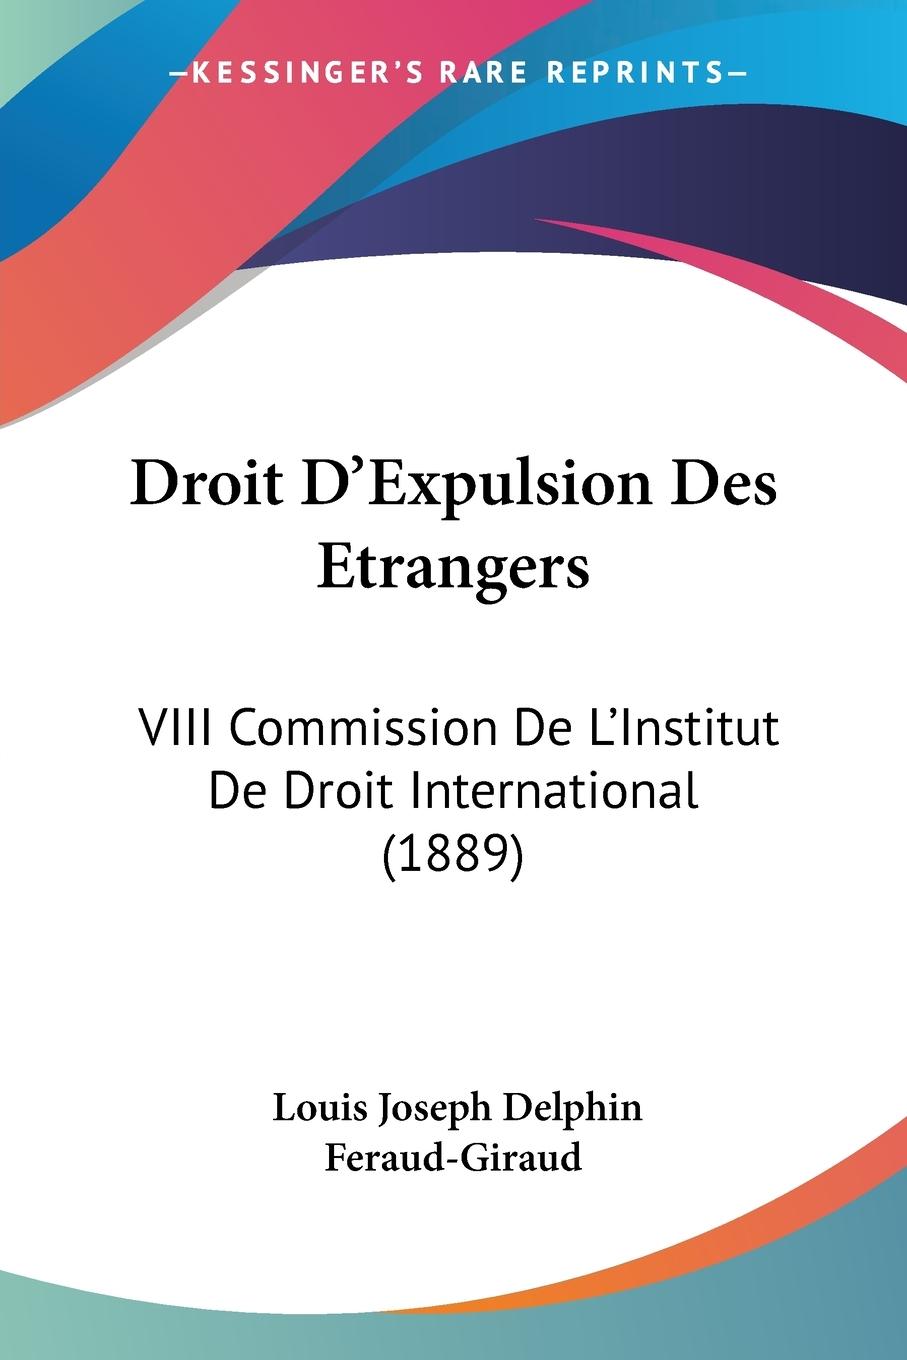 Droit D Expulsion Des Etrangers - Feraud-Giraud, Louis Joseph Delphin